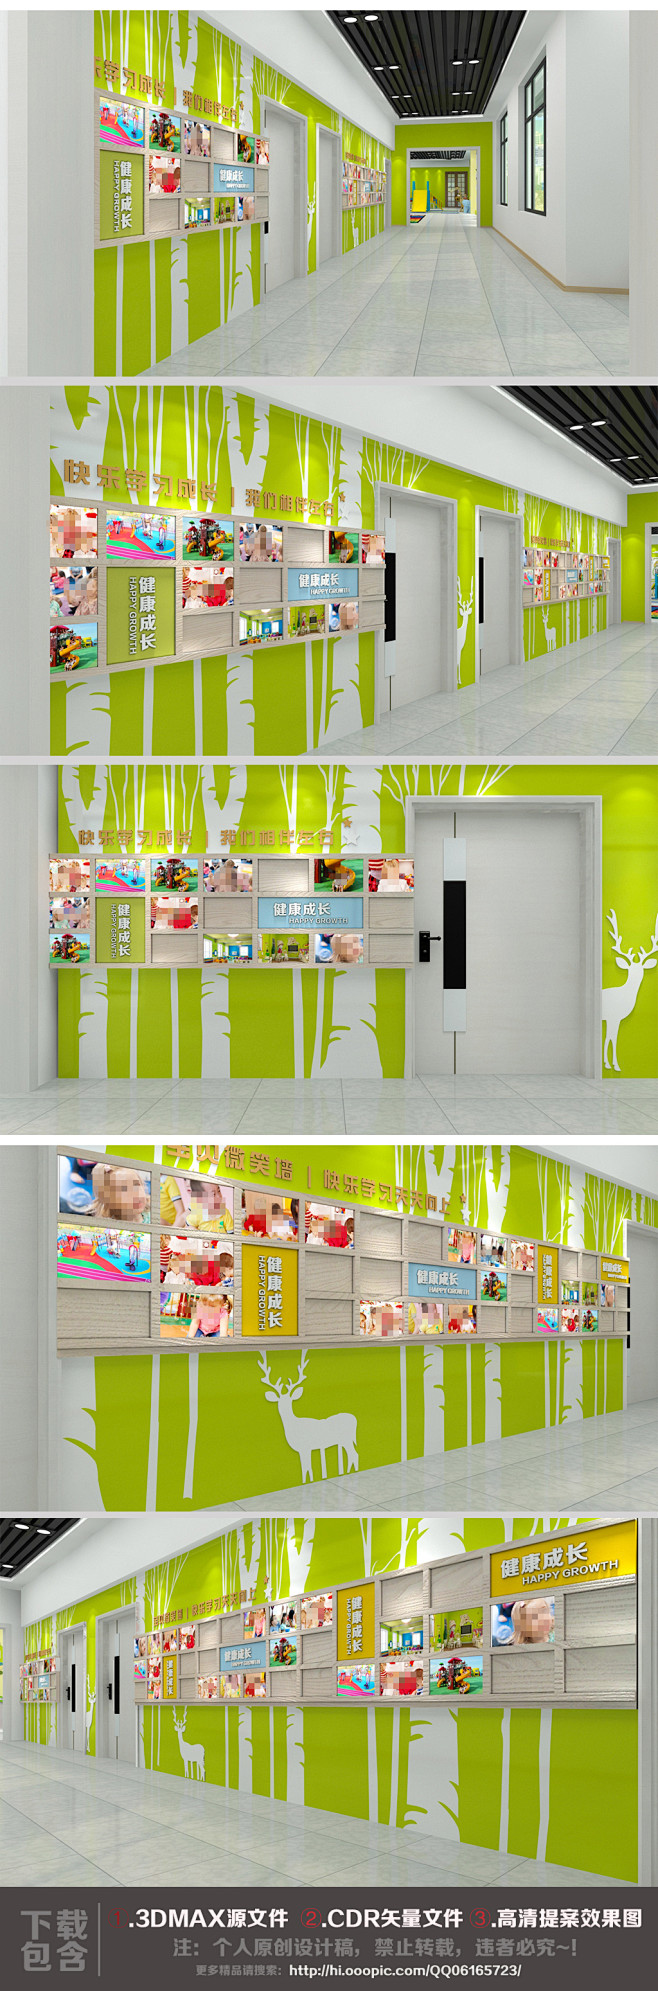 大型卡通幼儿园校室墙面装饰设计文化墙布置